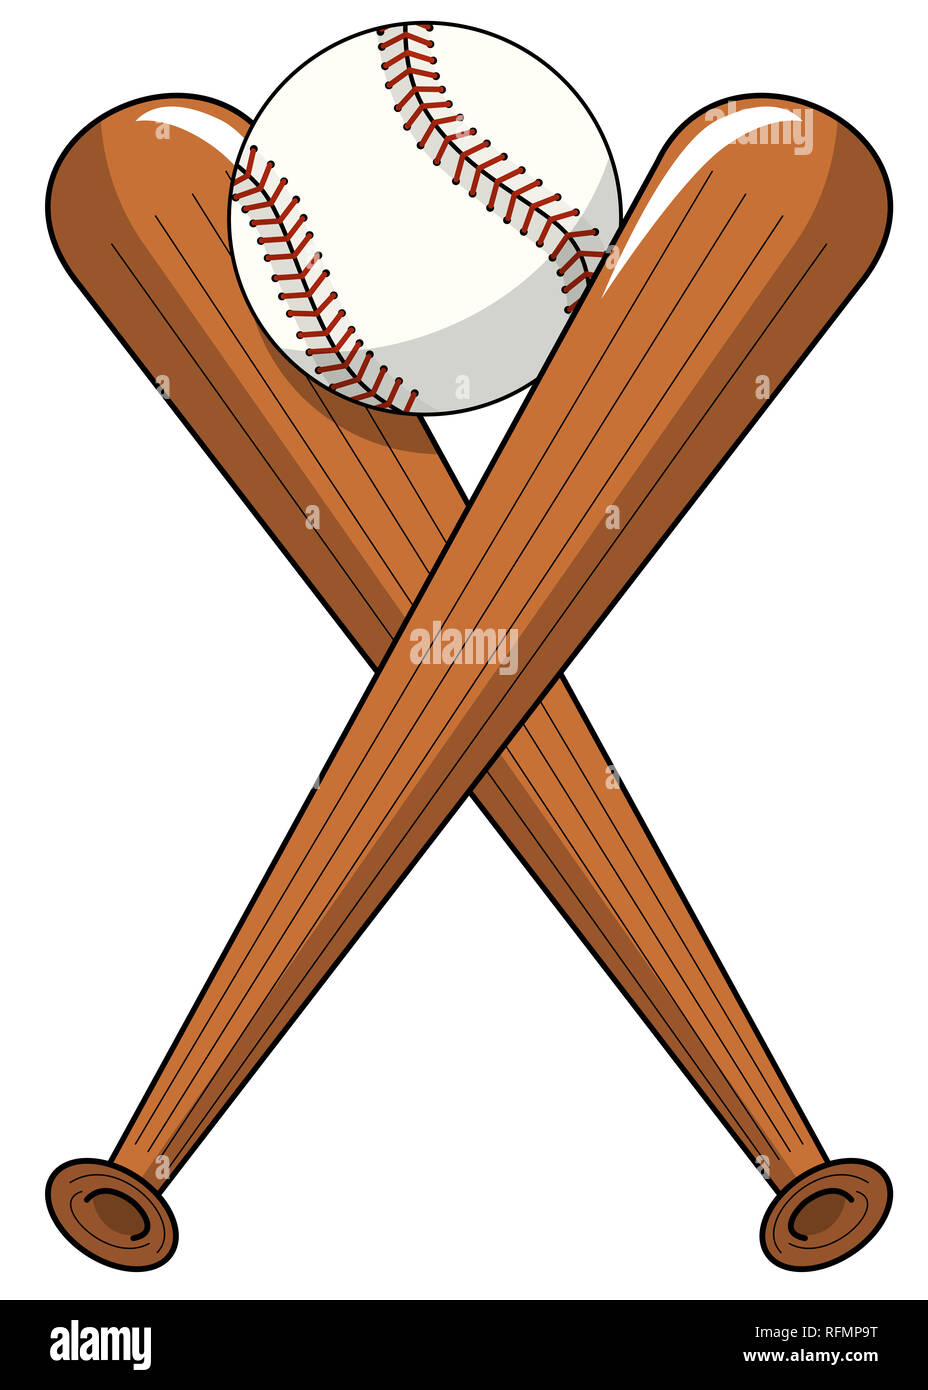 Beisbol de dibujos animados fotografías e imágenes de alta resolución -  Alamy